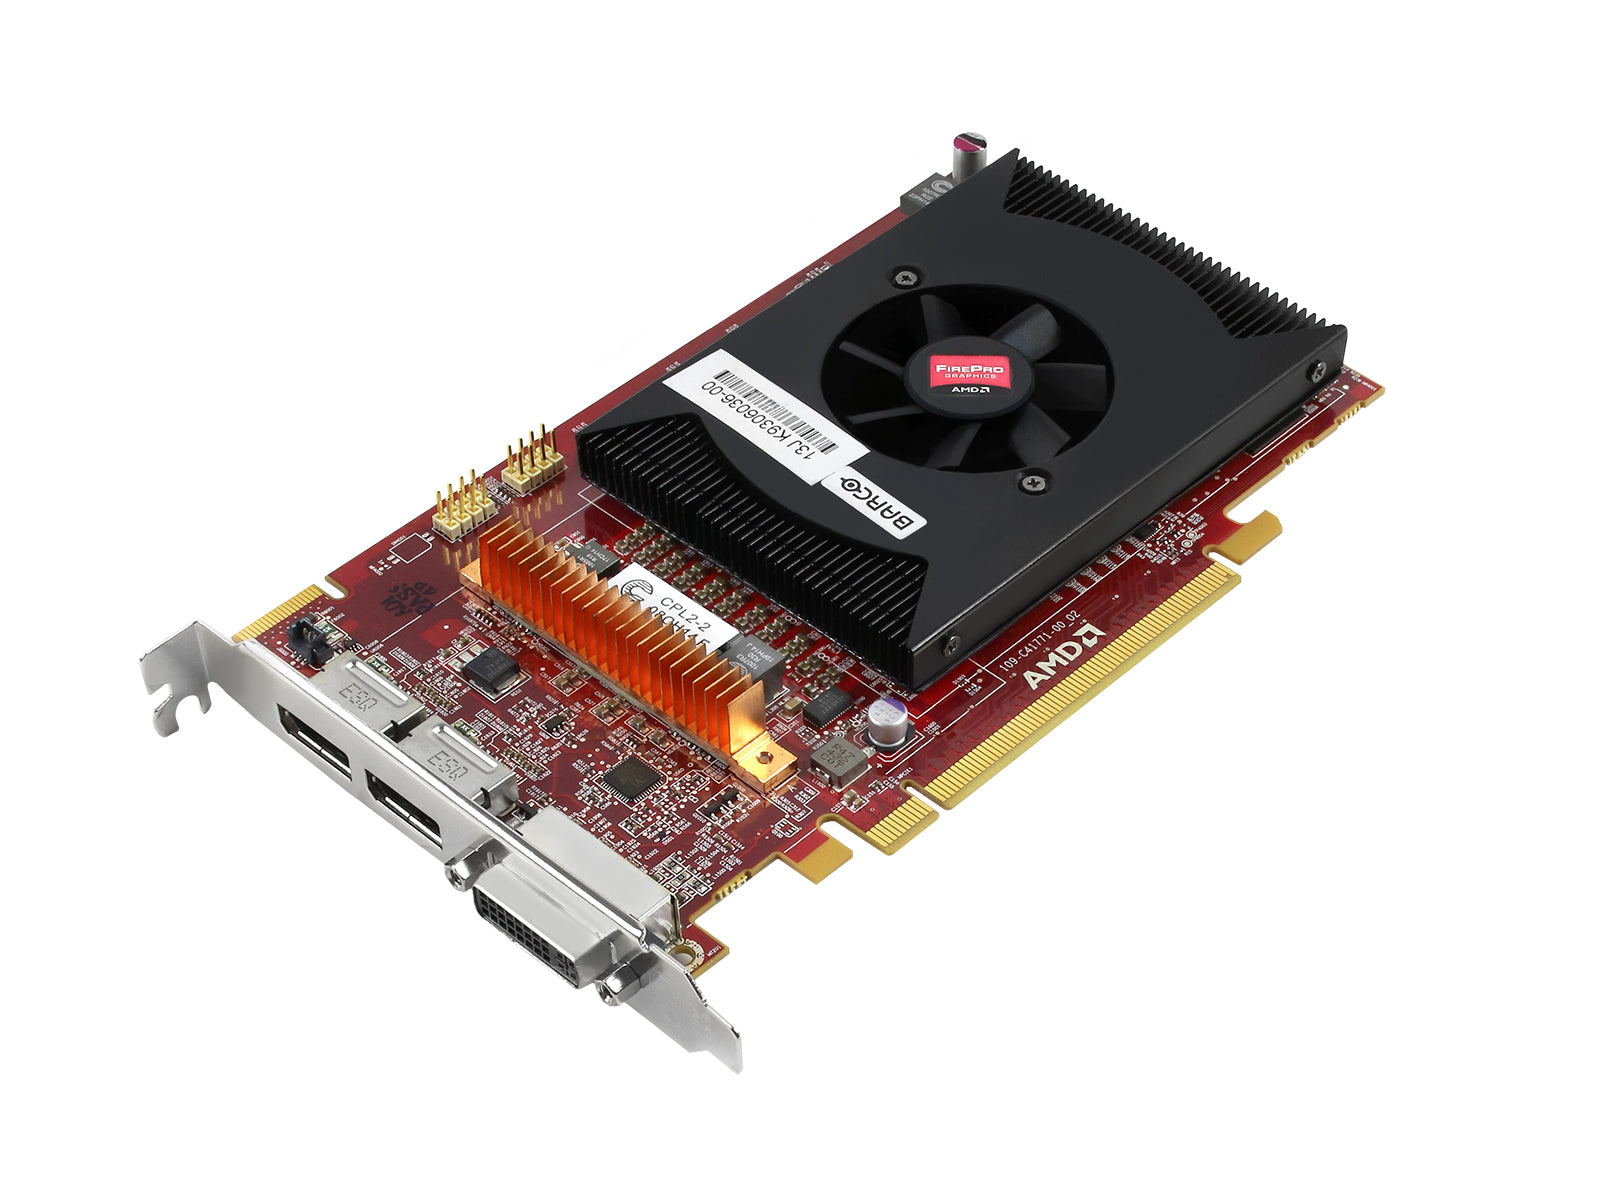 Barco MXRT-5500 2GB PCIe 트리플 헤드 그래픽 카드(K9306036) Monitors.com